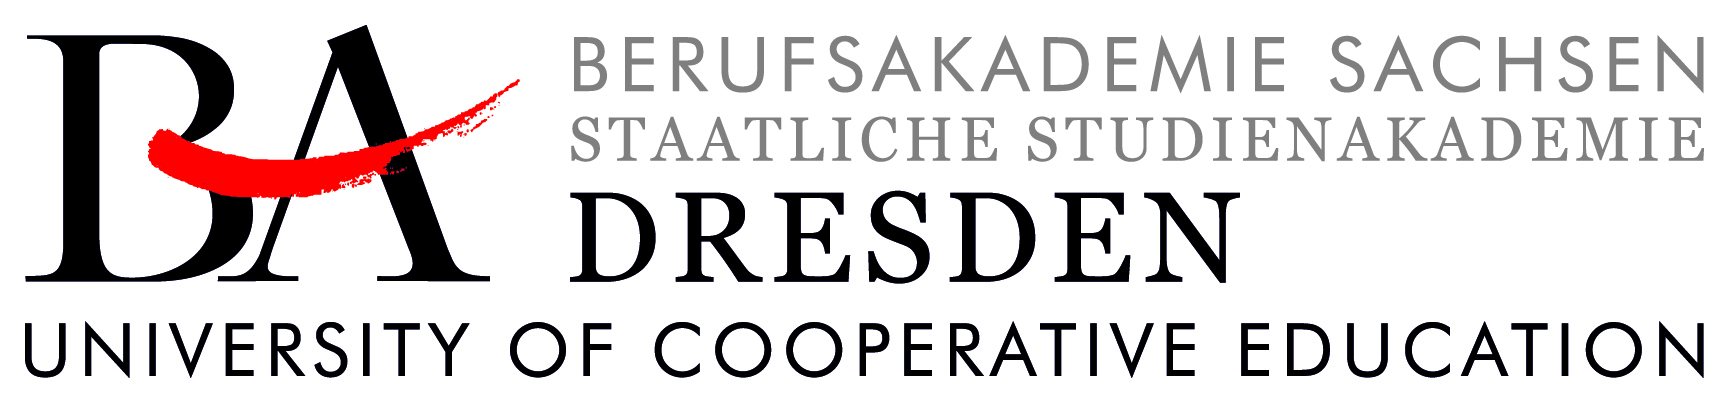 Logo der Berufsakademie Dresden | Staatliche Studienakademie Dresden